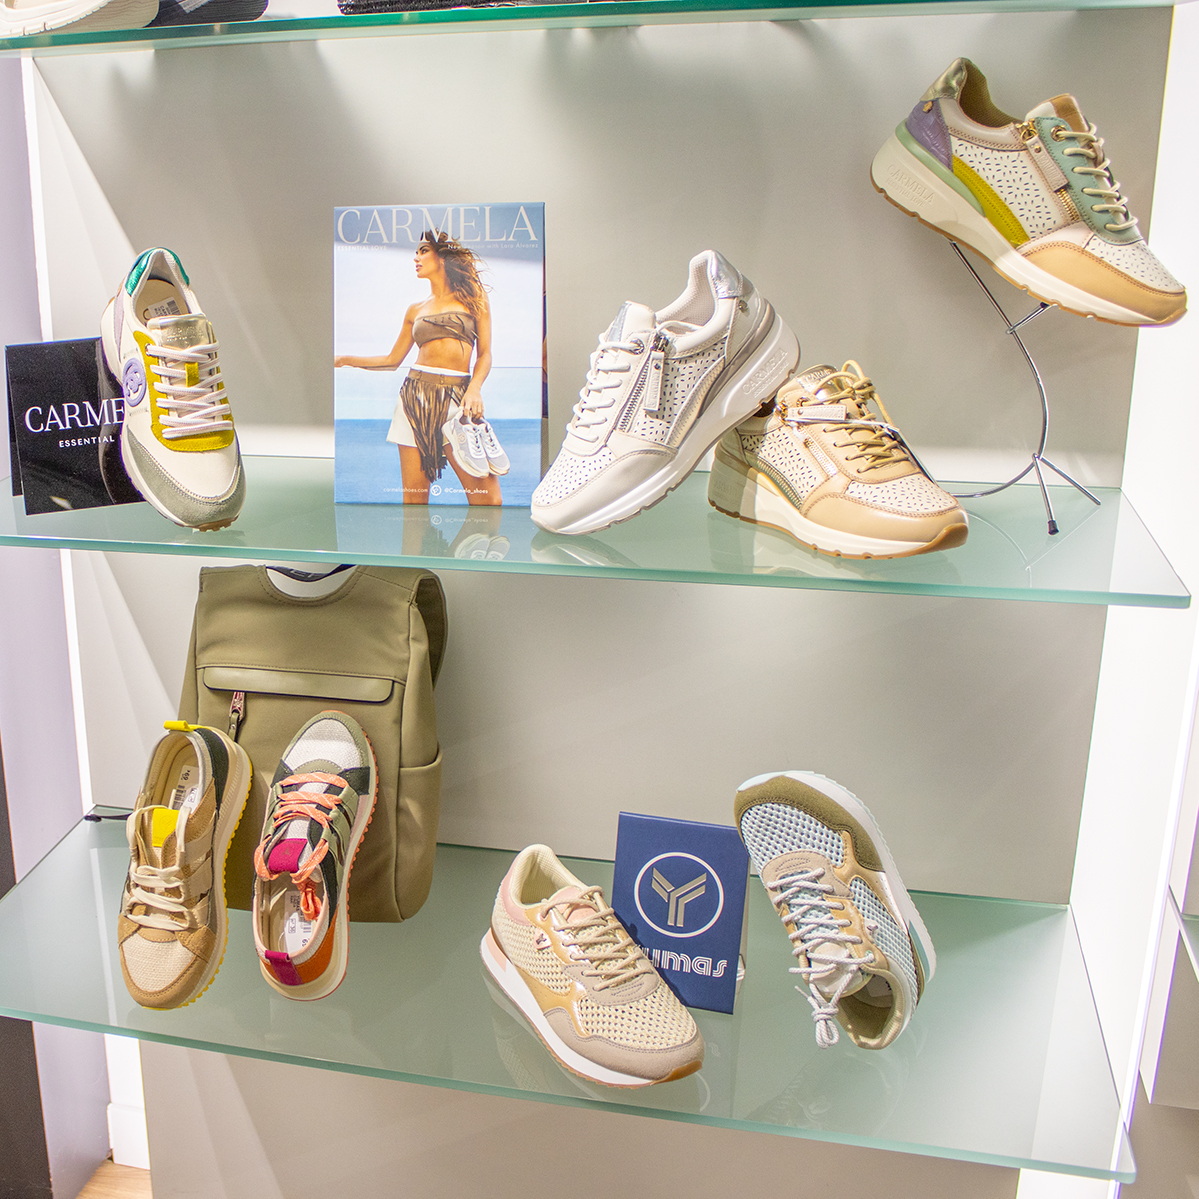 Comienzos de semana con todo el color de #YumasFootwear & #CarmelaShoes 

💻#TiendaOnline :
CalzadosRasha.com

#ZapateriasBurgos #Conjuntos #RashaShoes #Rasha #RashaZapaterias #Bolsos #ZapatosYBolsos #FrontStore #NuevaColeccion #NuevaTemporada